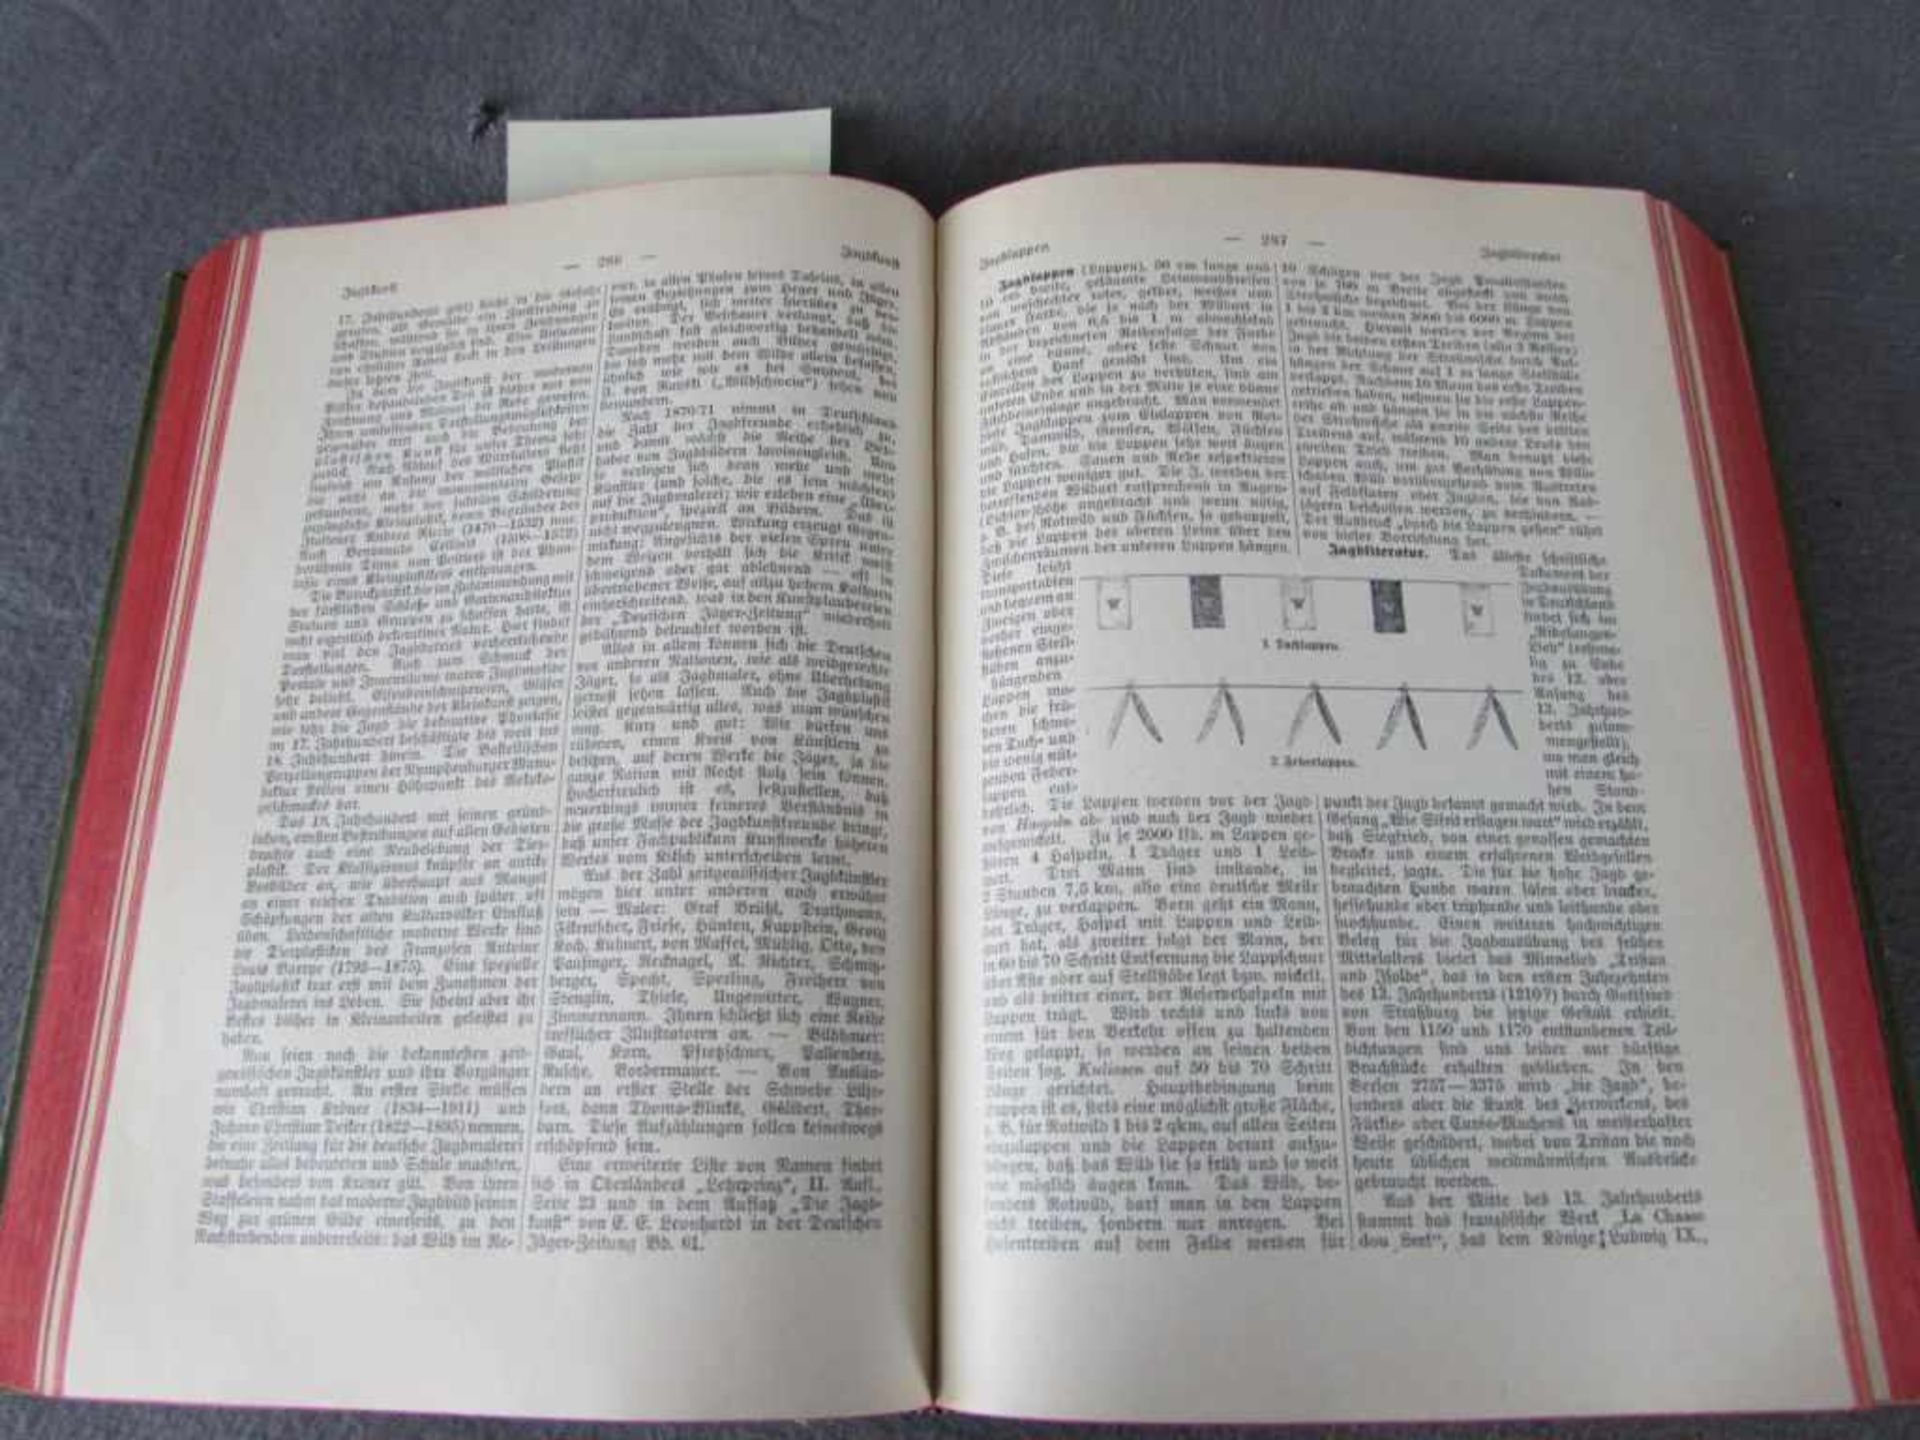 Riesenthals Jagdlexikon 1916 zahlreiche Abbildungen selten - Image 2 of 2